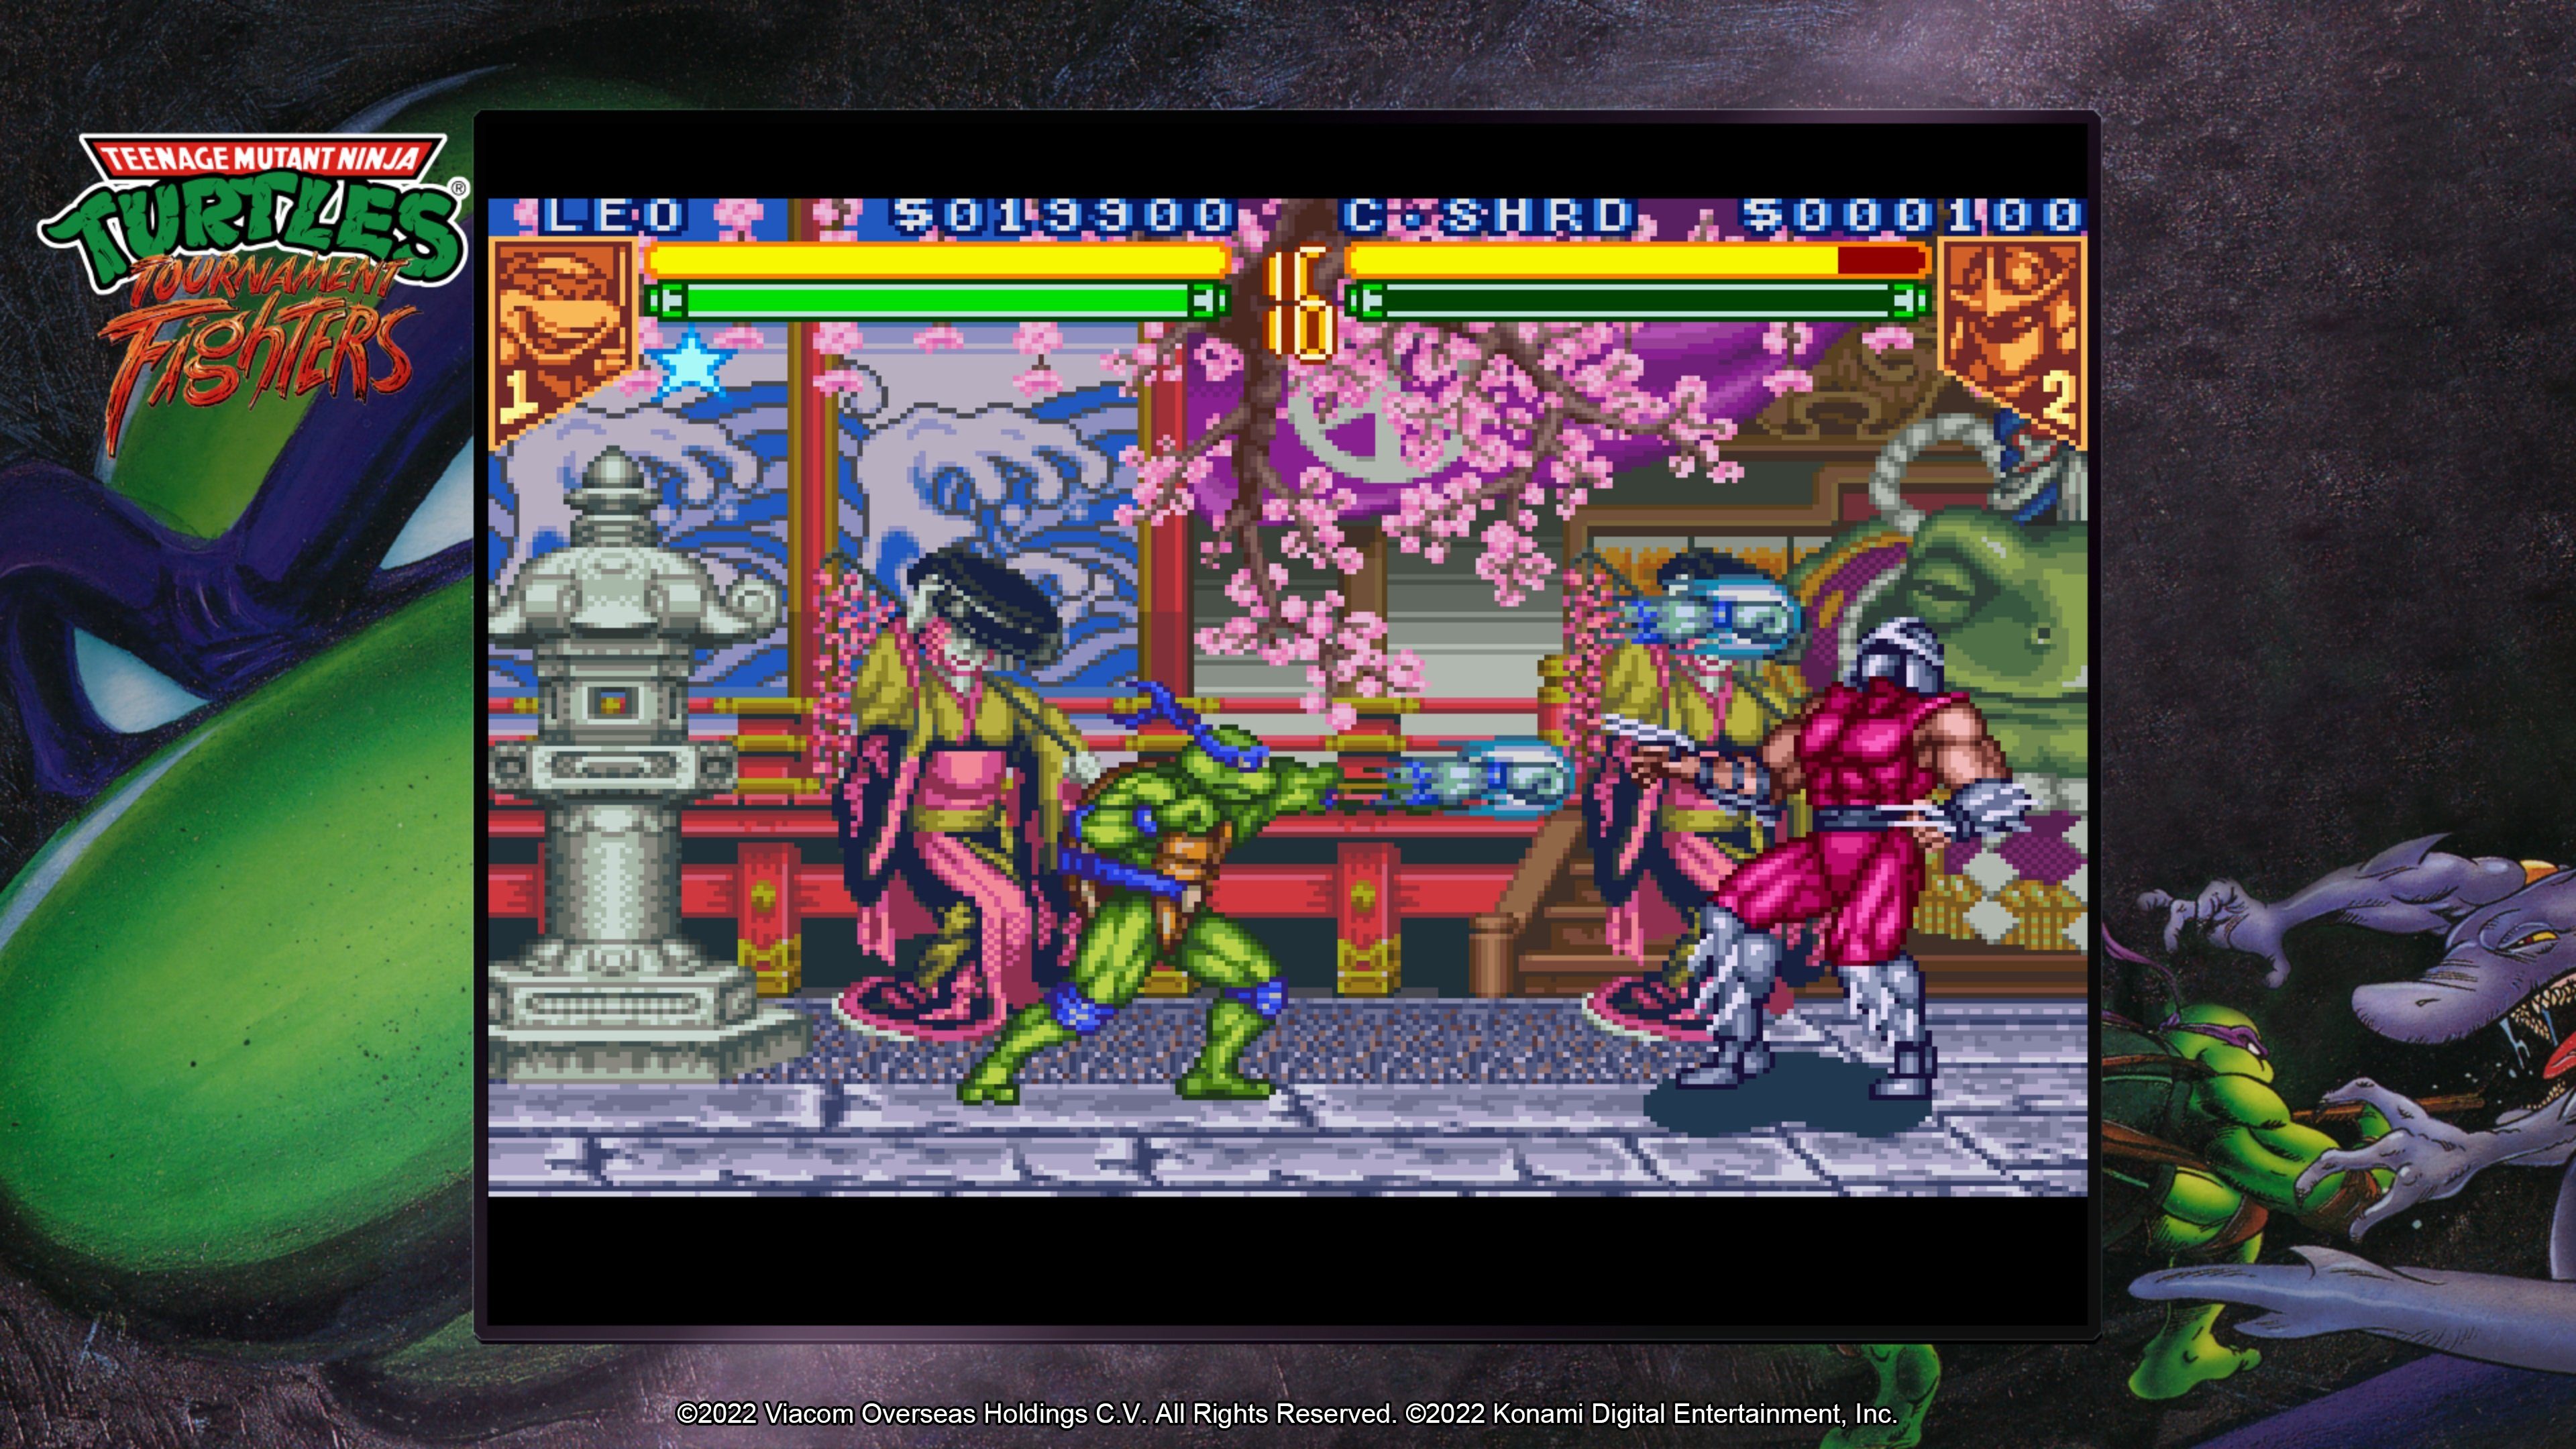 Konami Teenage Mutant Ninja Turtles 5 The PlayStation - Collection Cowabunga